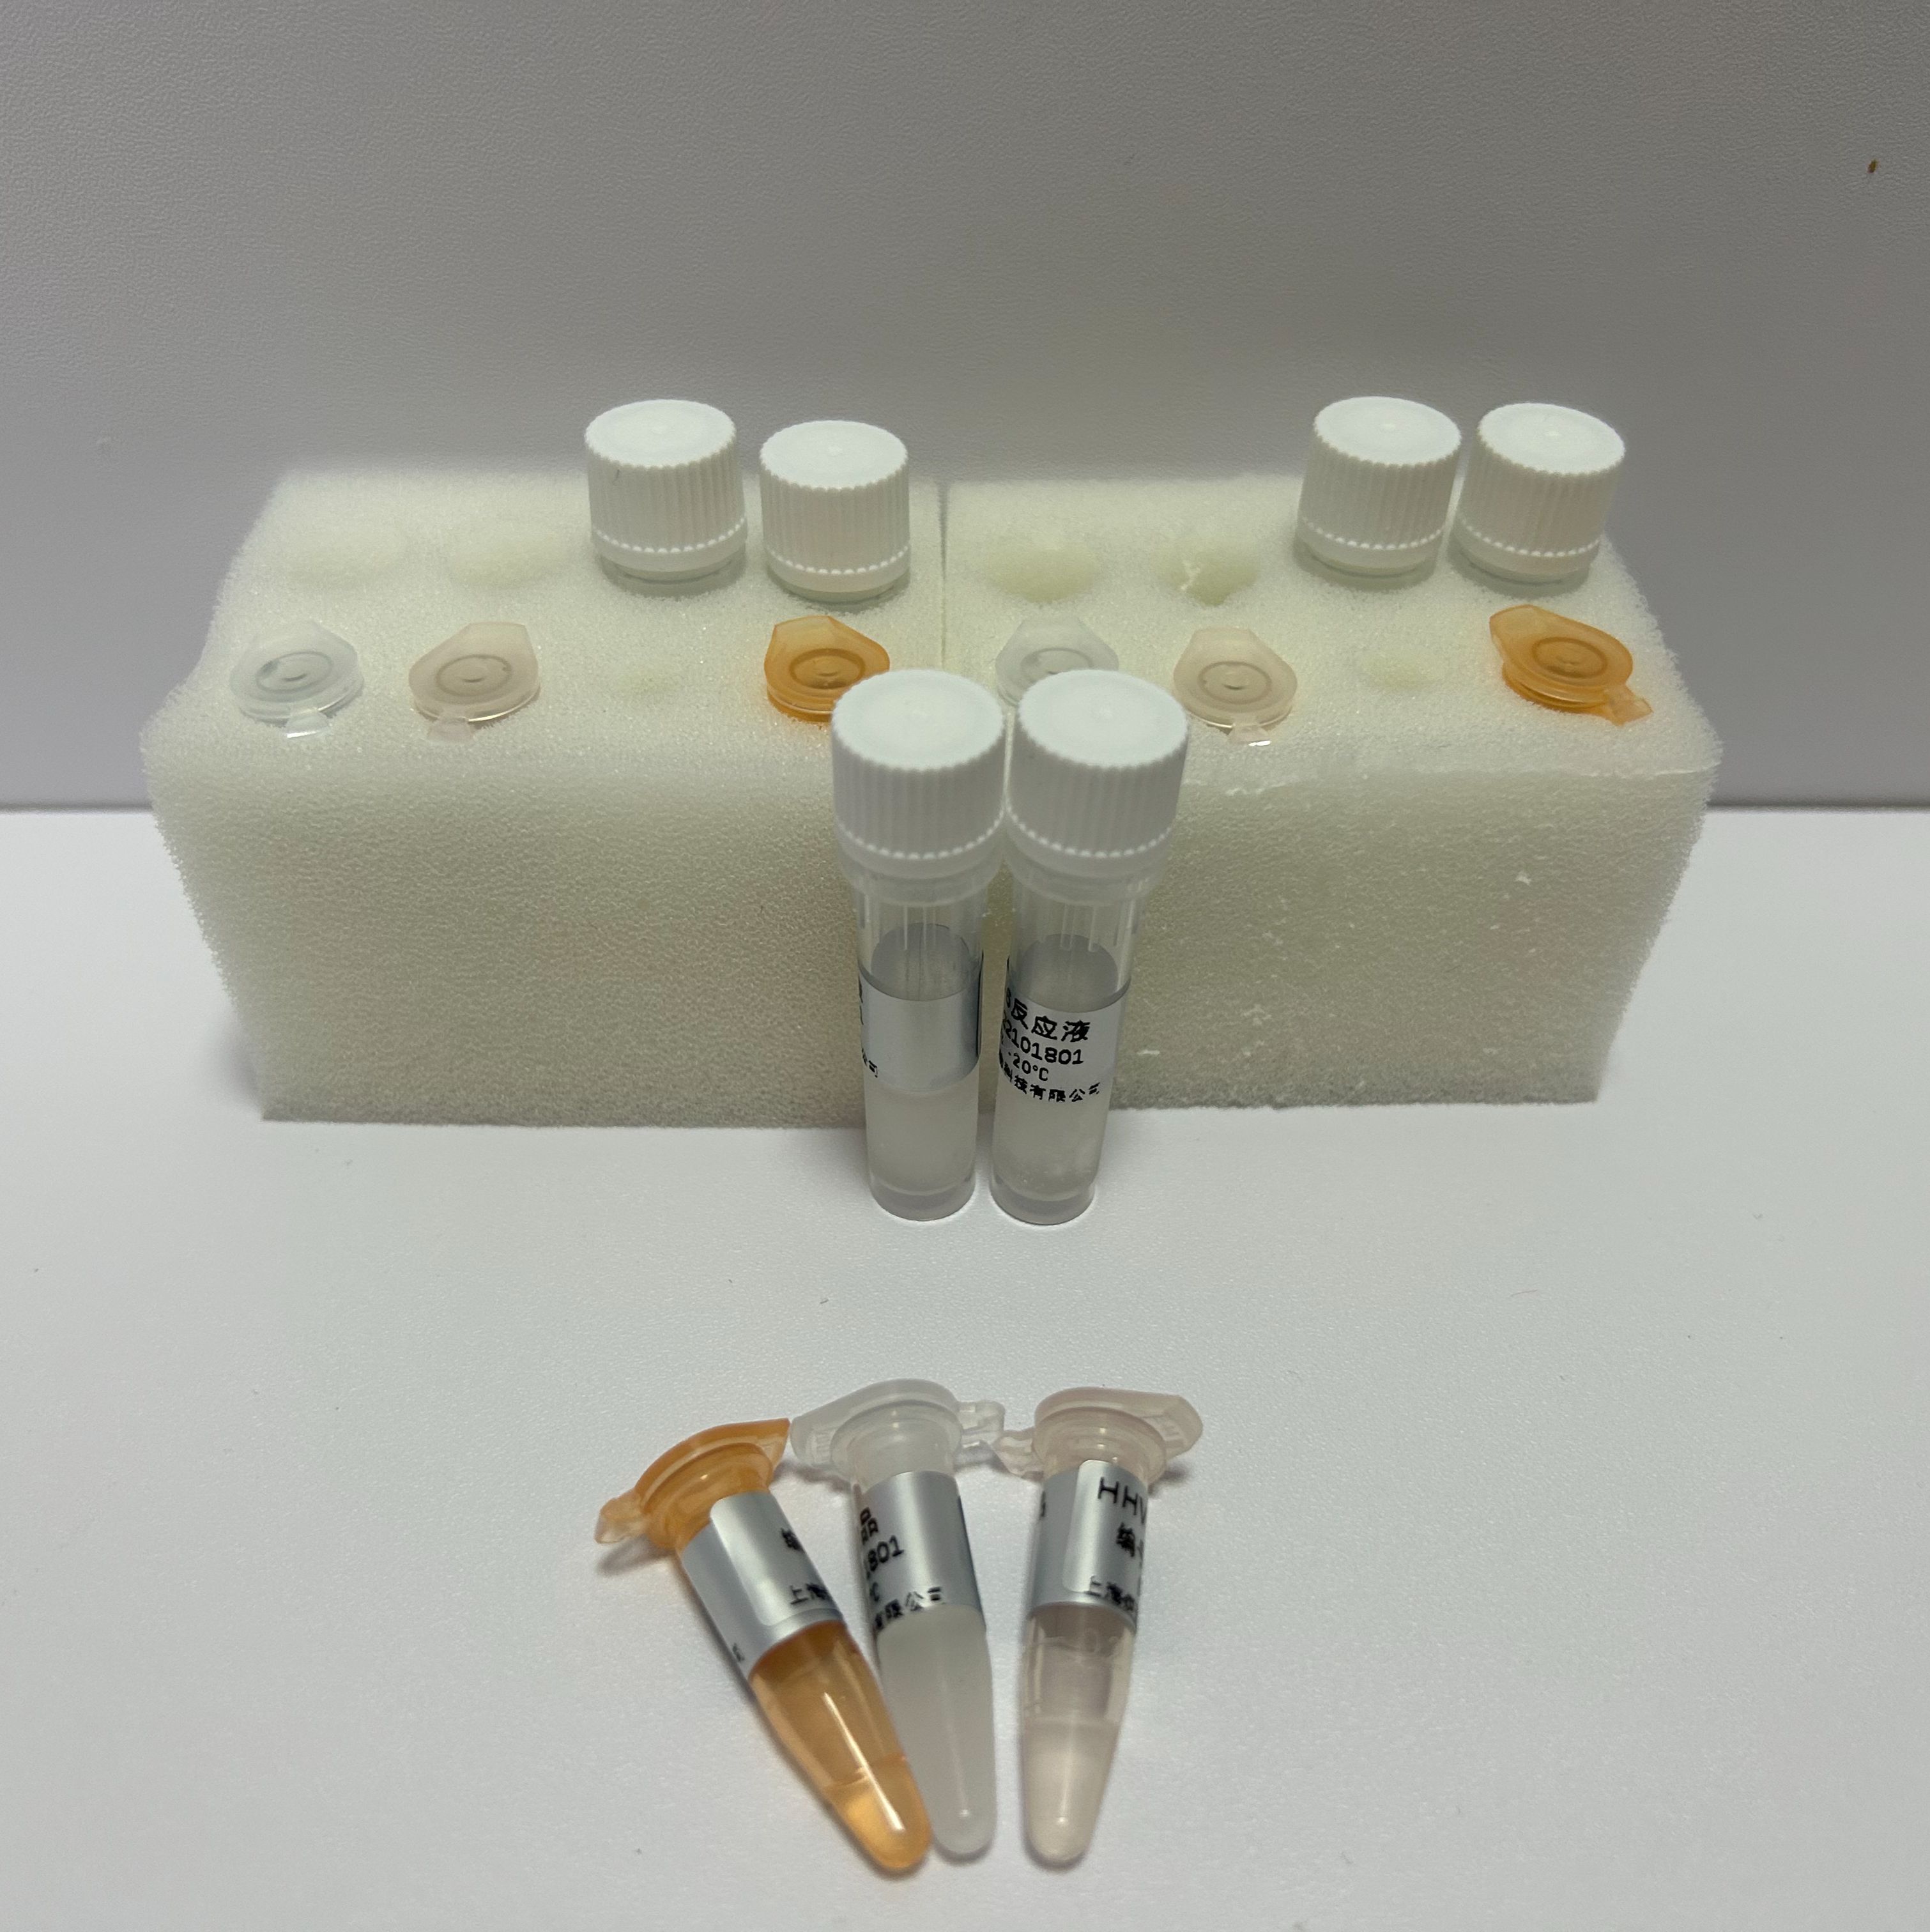 鸡传染性支气管炎病毒RT-PCR试剂盒